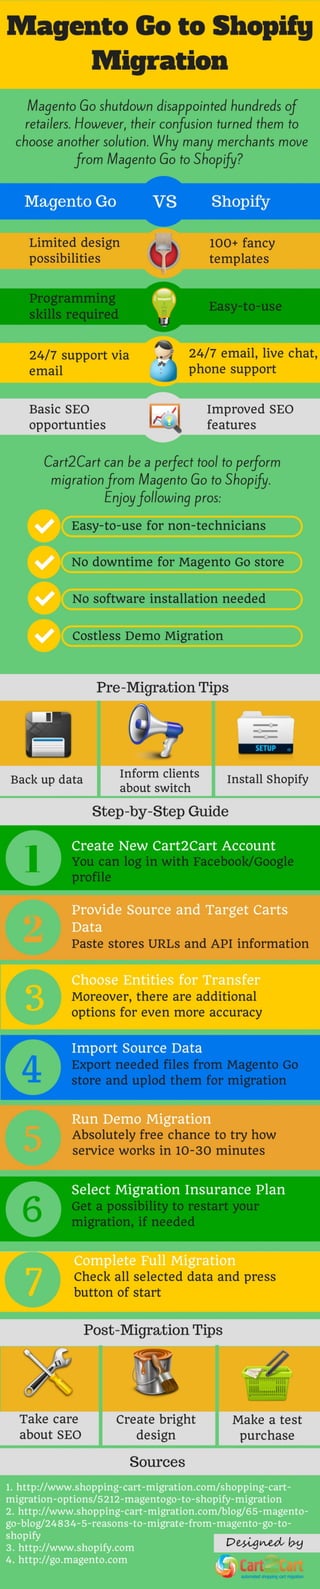 Magento Go to Shopify Migration